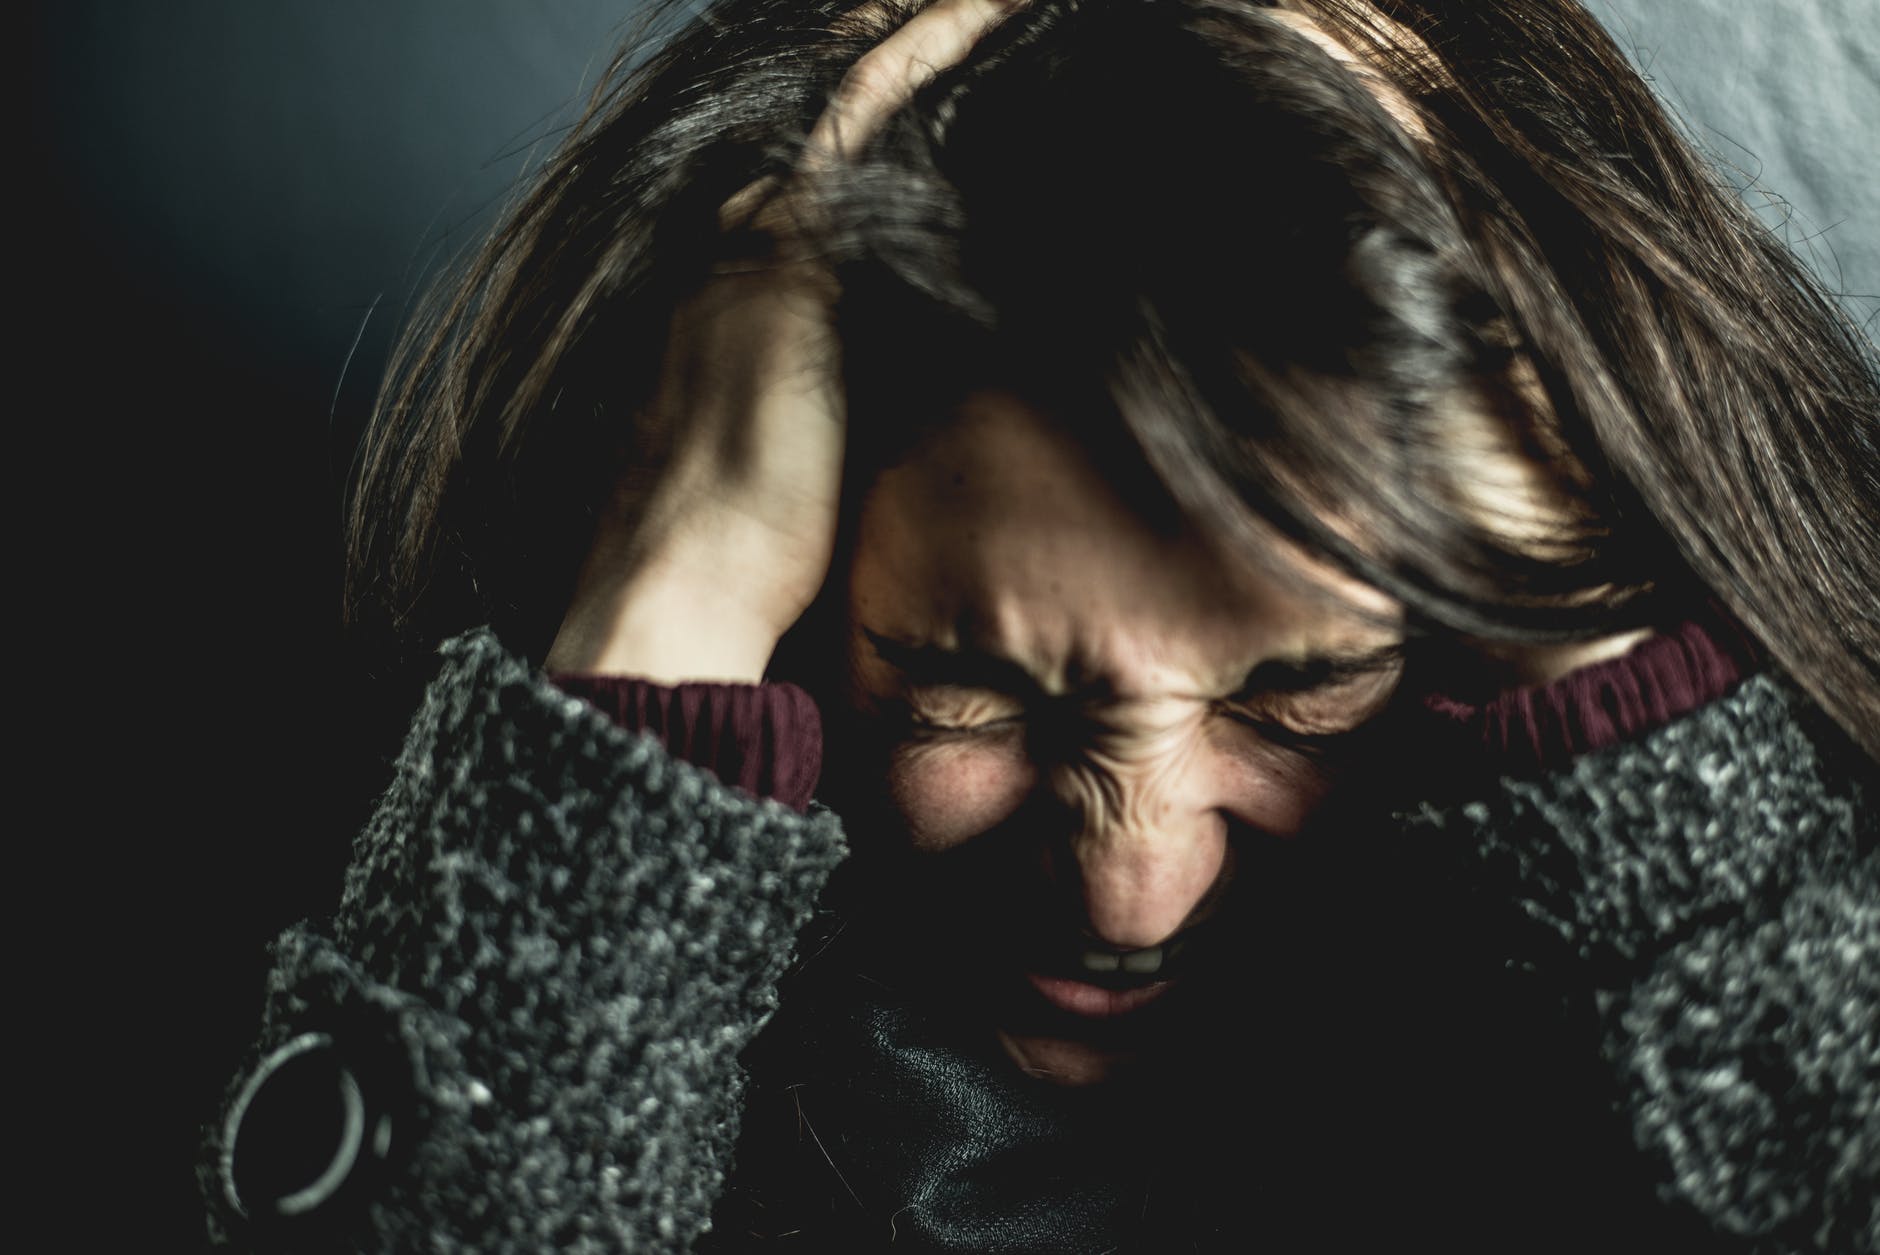 É importante procurar ajuda profissional se você suspeitar que sofre de Transtorno de Ansiedade Generalizada; saiba como reconhecer os sinais – iStock/Getty Images